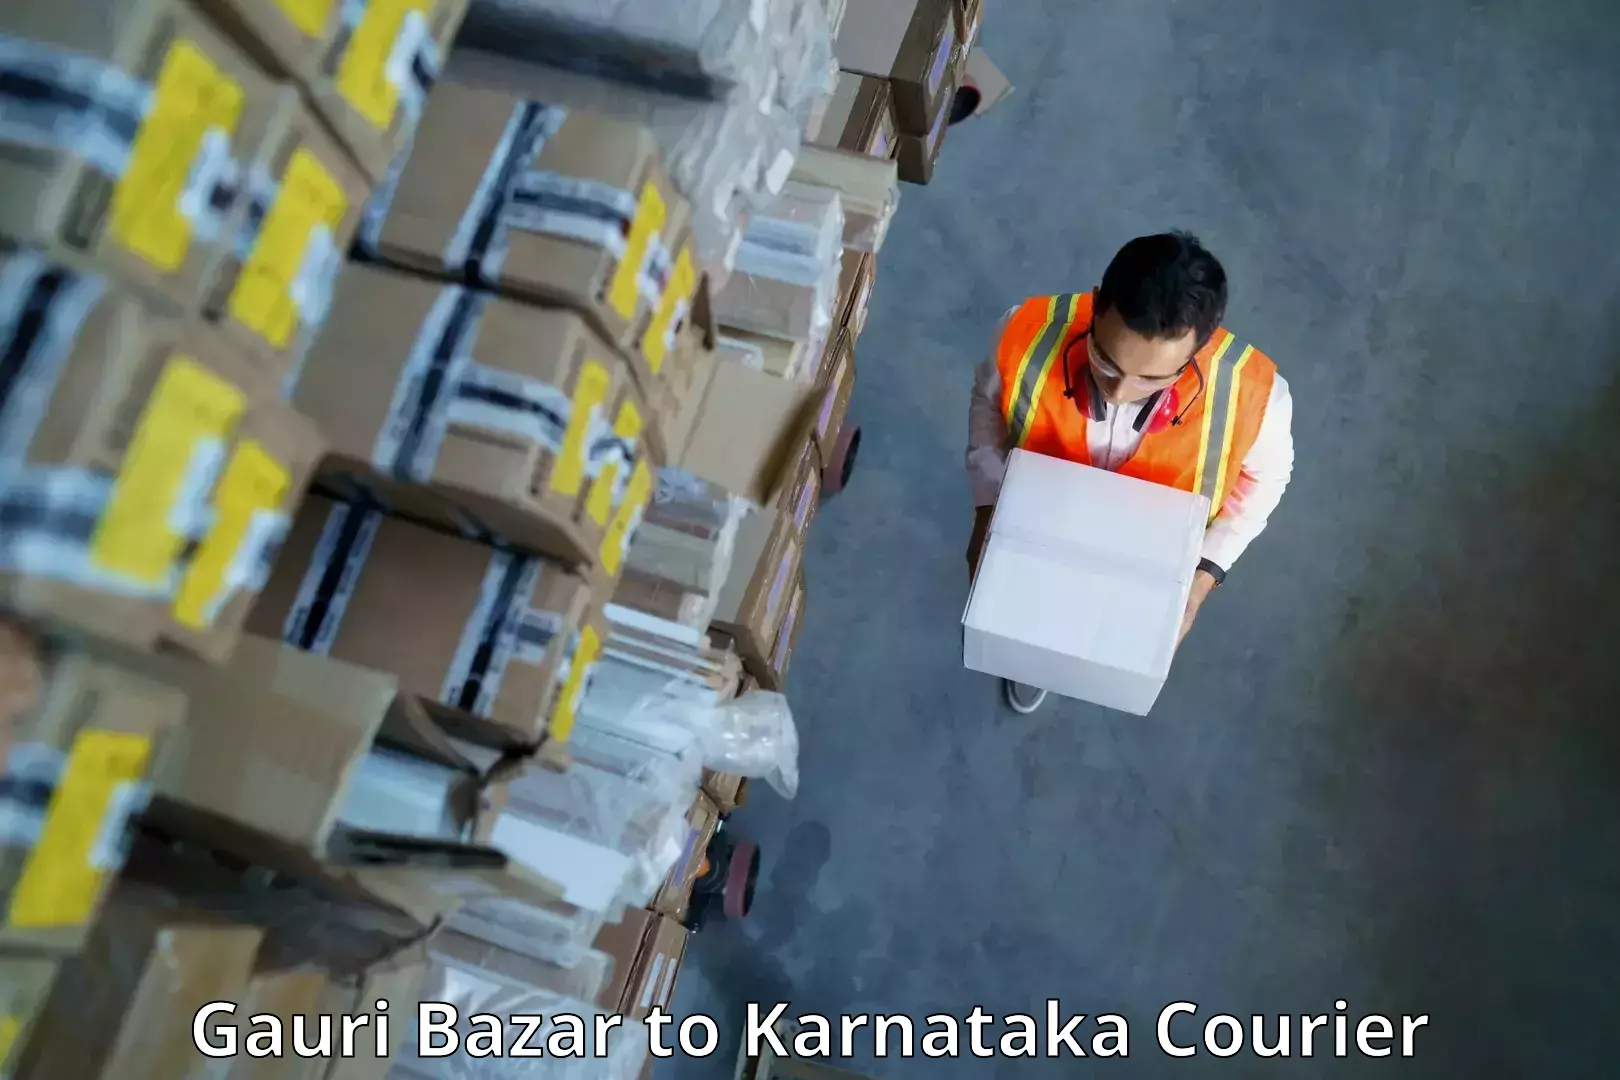 Efficient freight service Gauri Bazar to Bangalore